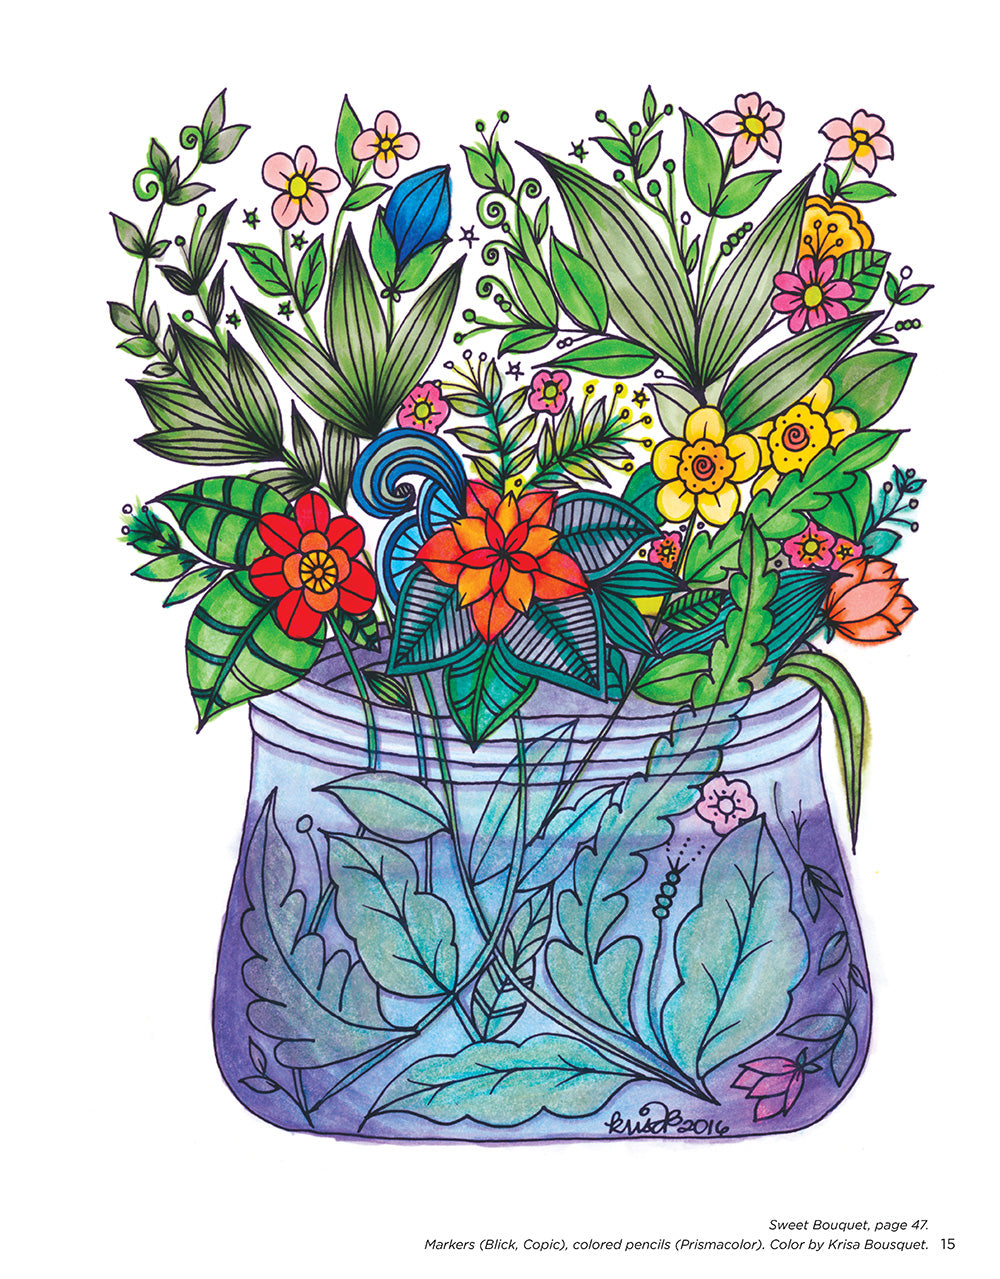 KC Doodle Art Beautiful Blooms Coloring Book